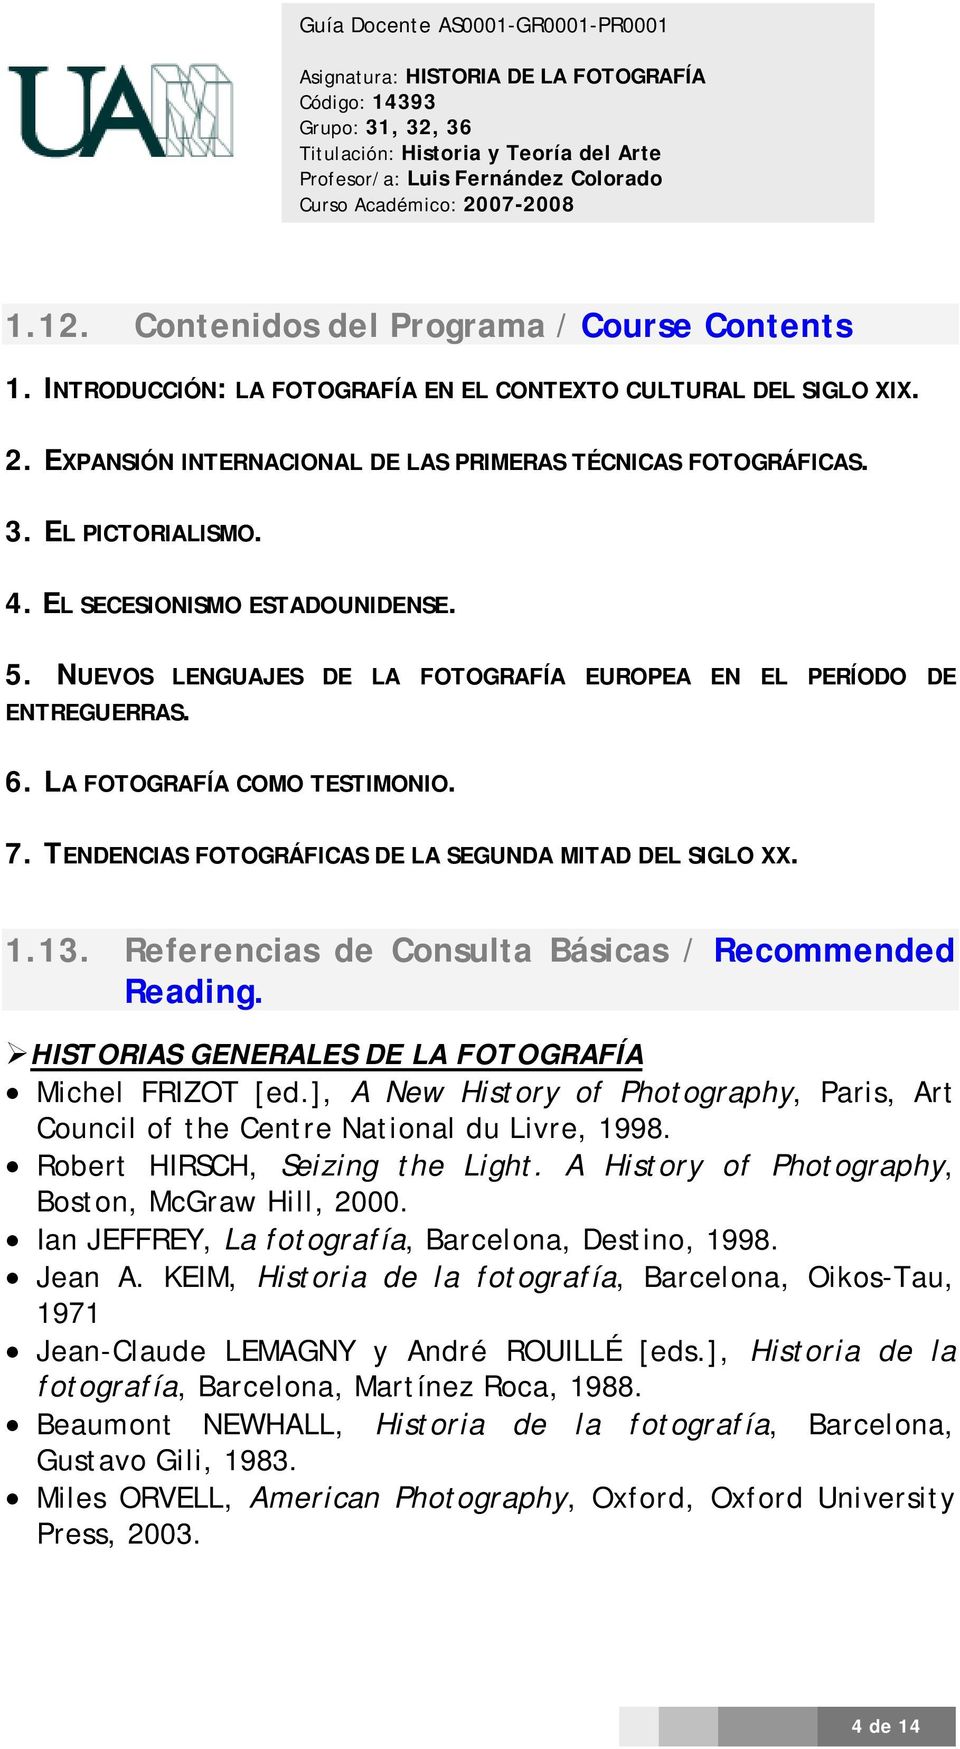 TENDENCIAS FOTOGRÁFICAS DE LA SEGUNDA MITAD DEL SIGLO XX. 1.13. Referencias de Consulta Básicas / Recommended Reading. HISTORIAS GENERALES DE LA FOTOGRAFÍA Michel FRIZOT [ed.